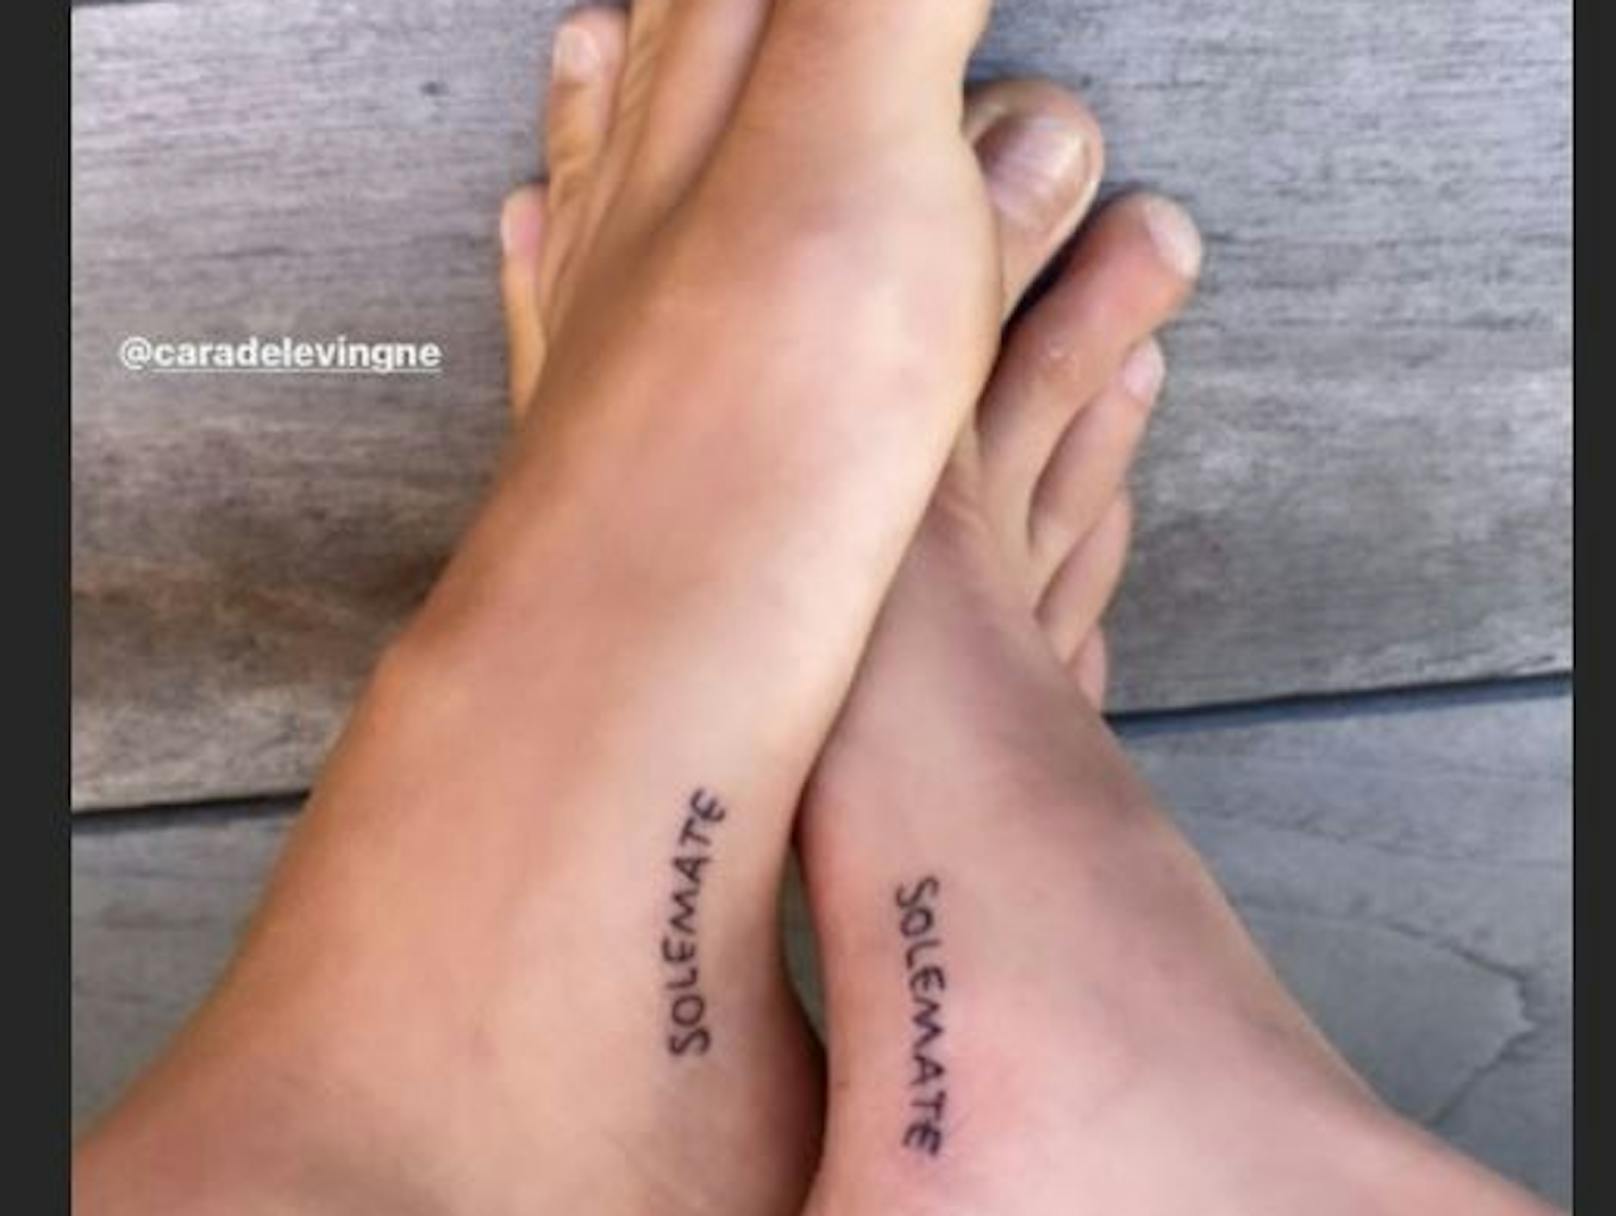 <strong>Cara Delevingne</strong> und Freundin <strong>Kaia Gerber</strong> bezeichnen sich als "solemate" und haben sich ein ungewöhnliches Fuß-Tattoo stechen lassen.